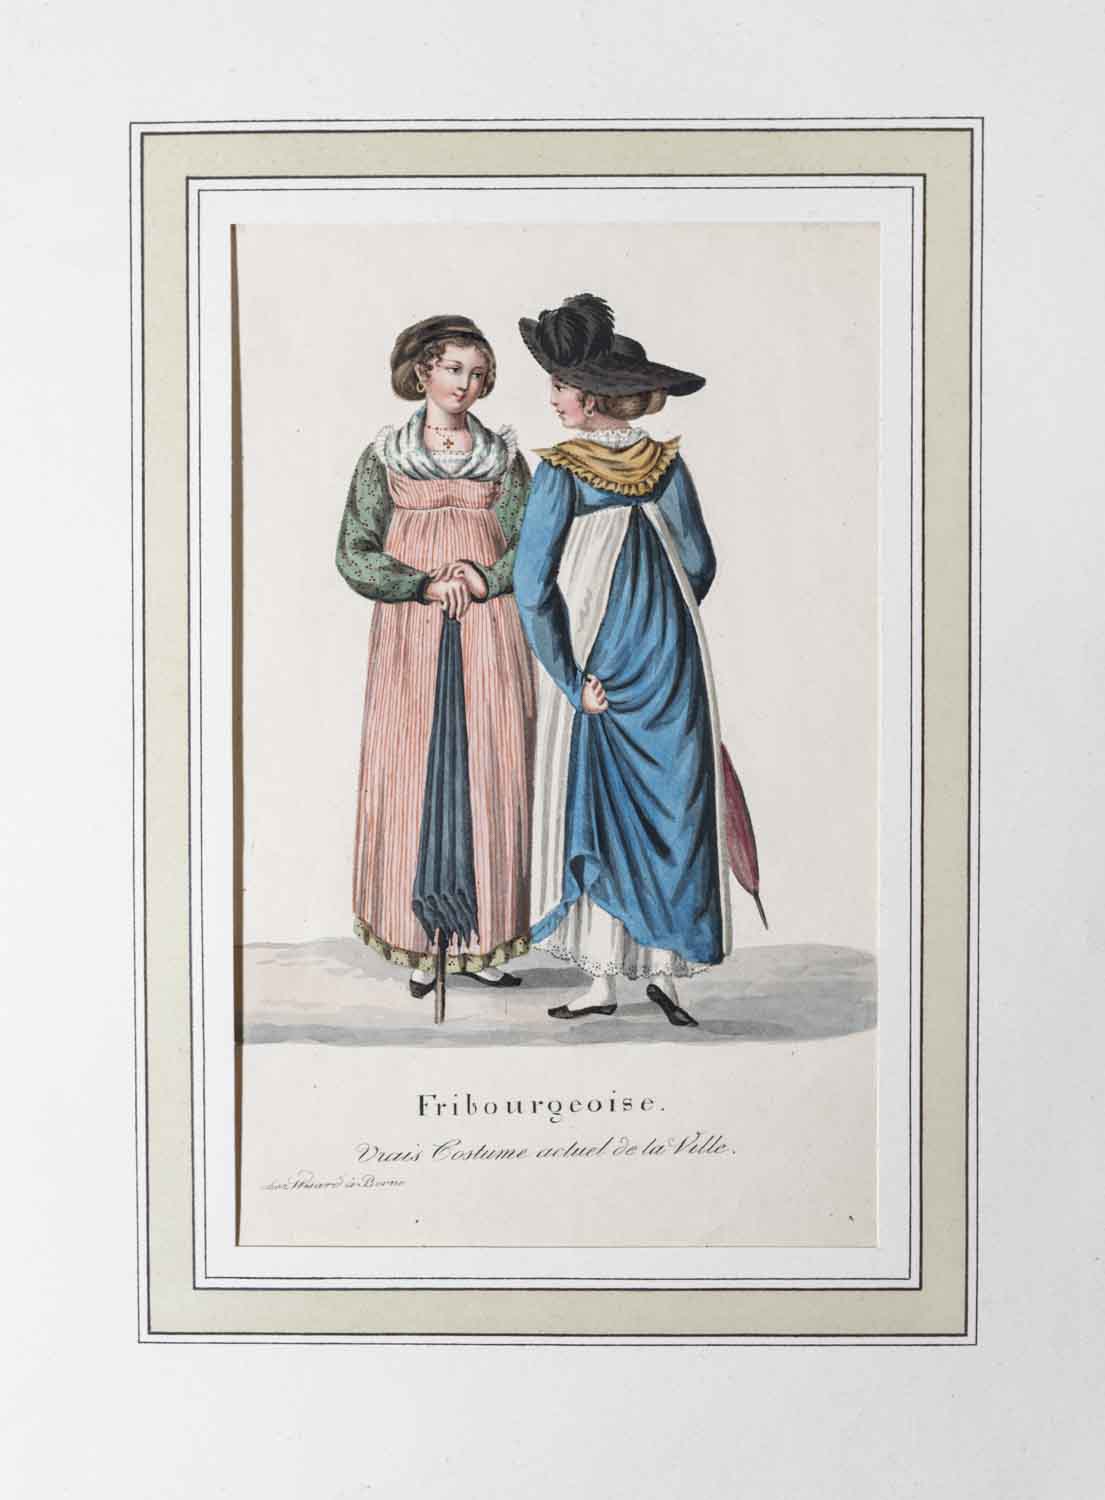 WISARD, Gottlieb Emanuel (1787-1837): - Fribourgeoise. Vrais Costume actuel de la Ville.